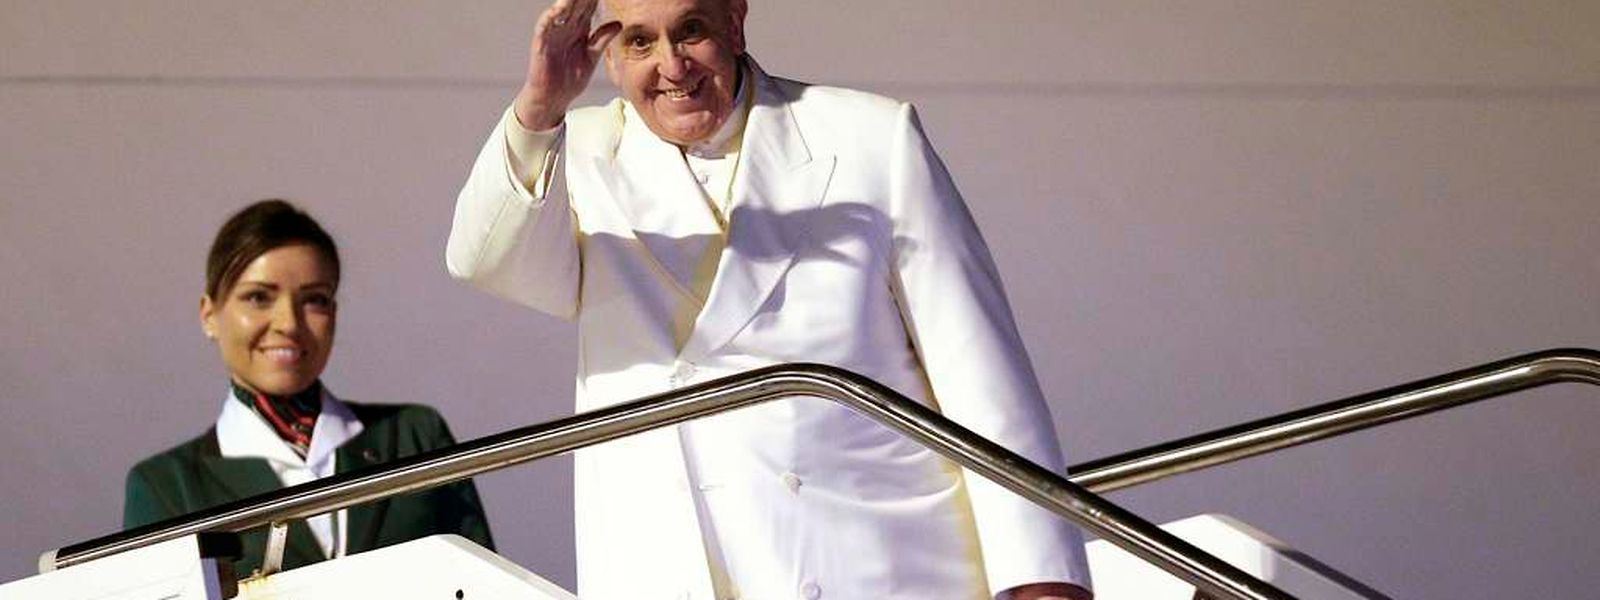 Papst Franziskus stieg am Montagabend in Rom in den Flieger.